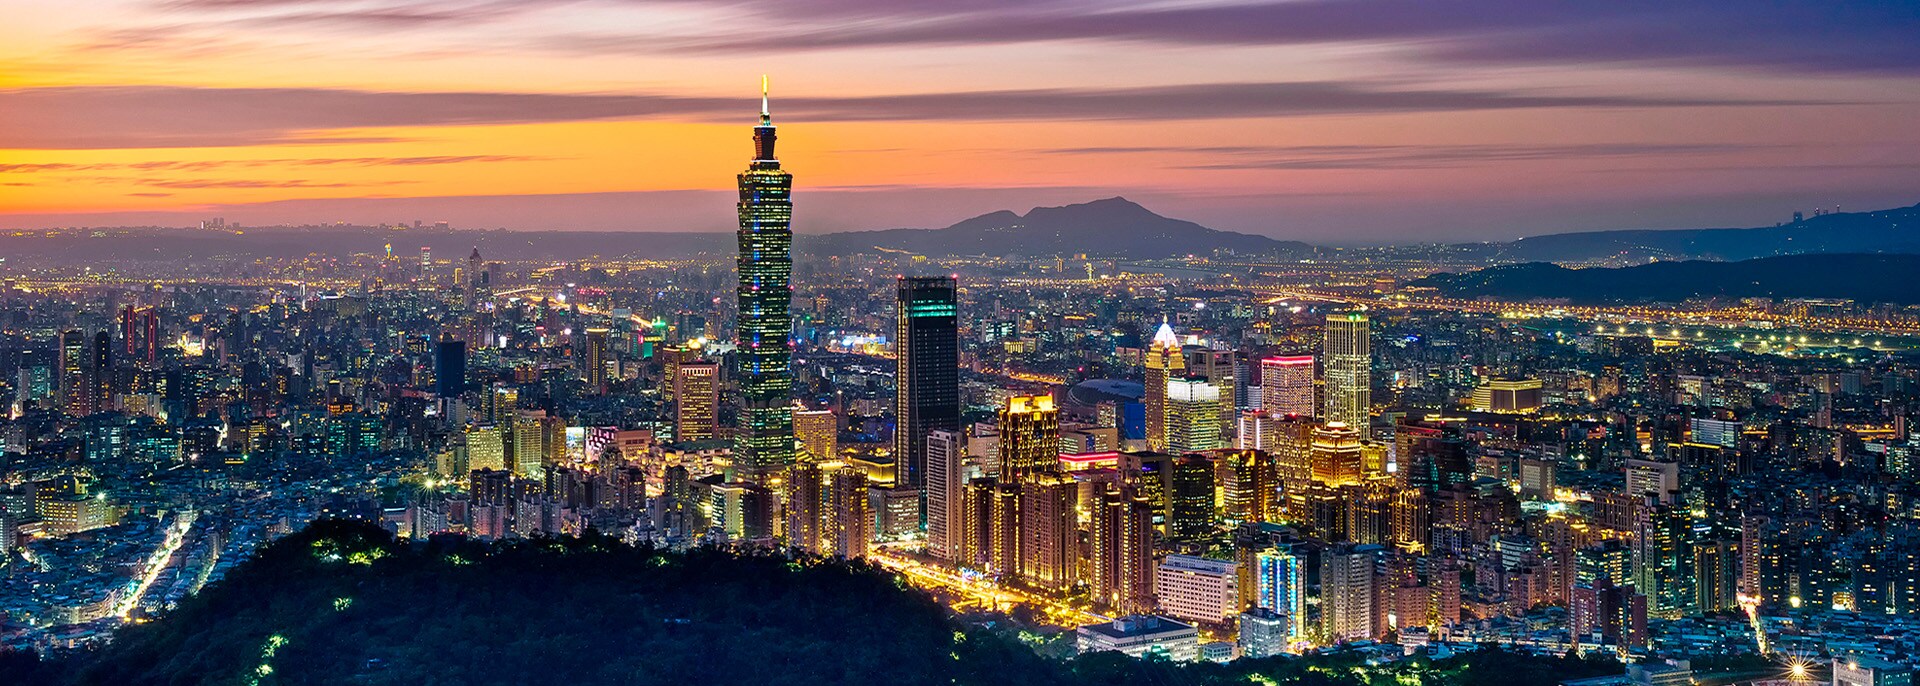 Taipei Taiwan 101